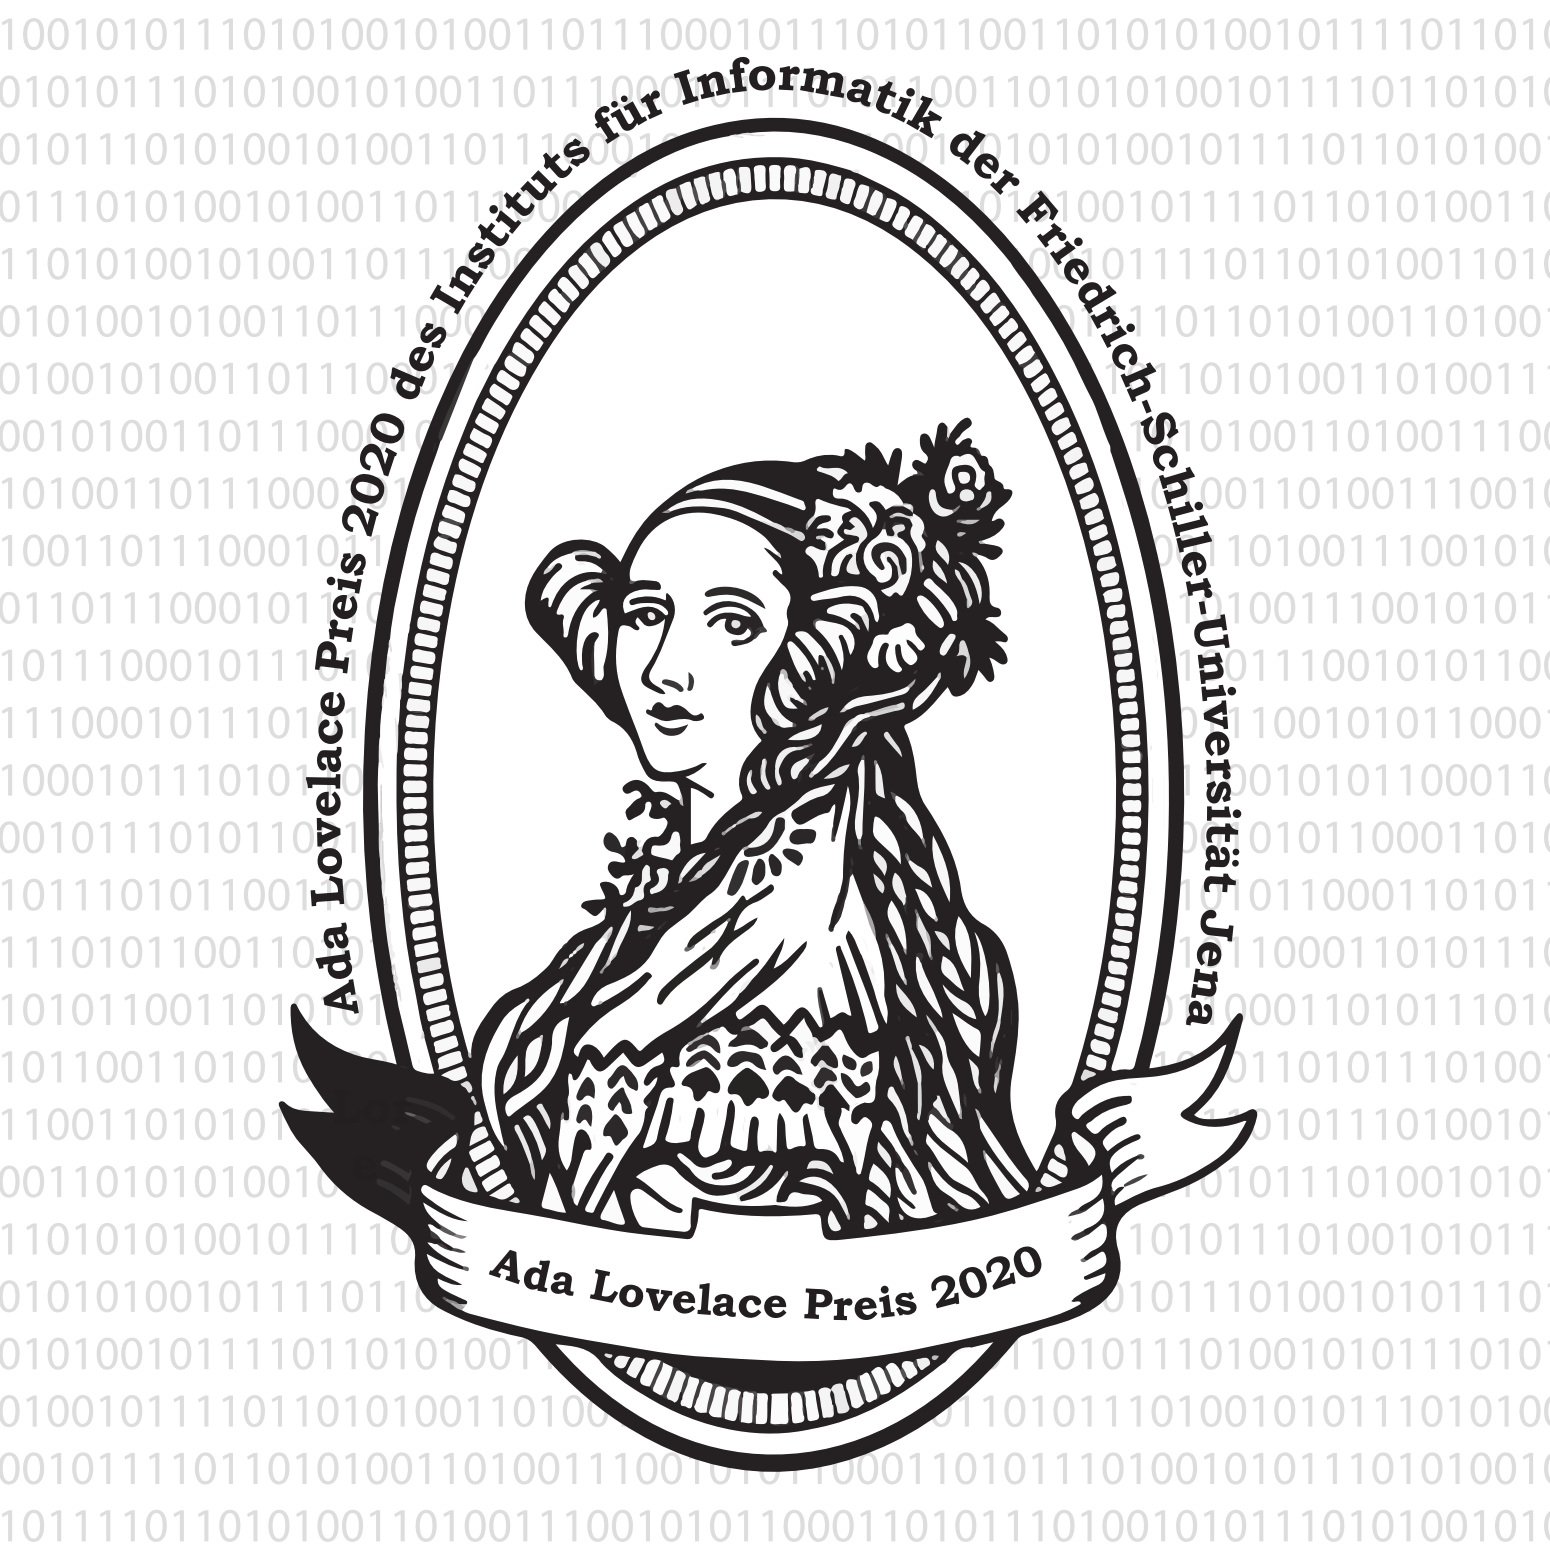 Ada Lovelace Preis